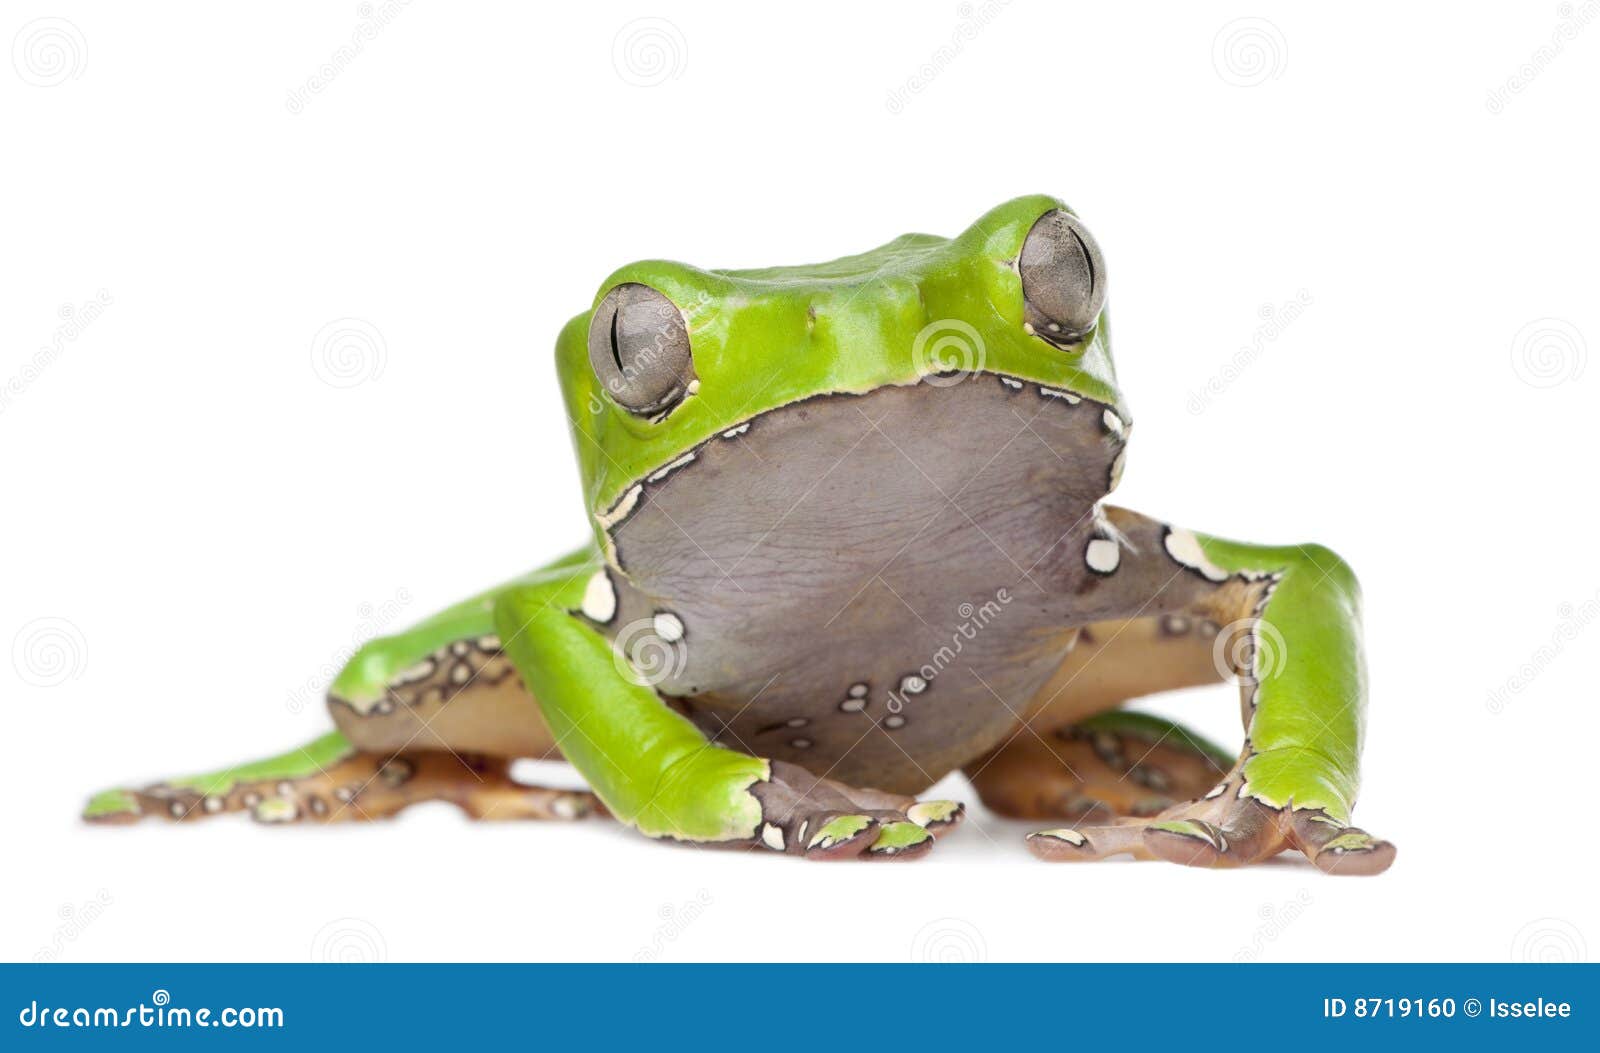 giant leaf frog - phyllomedusa bicolor